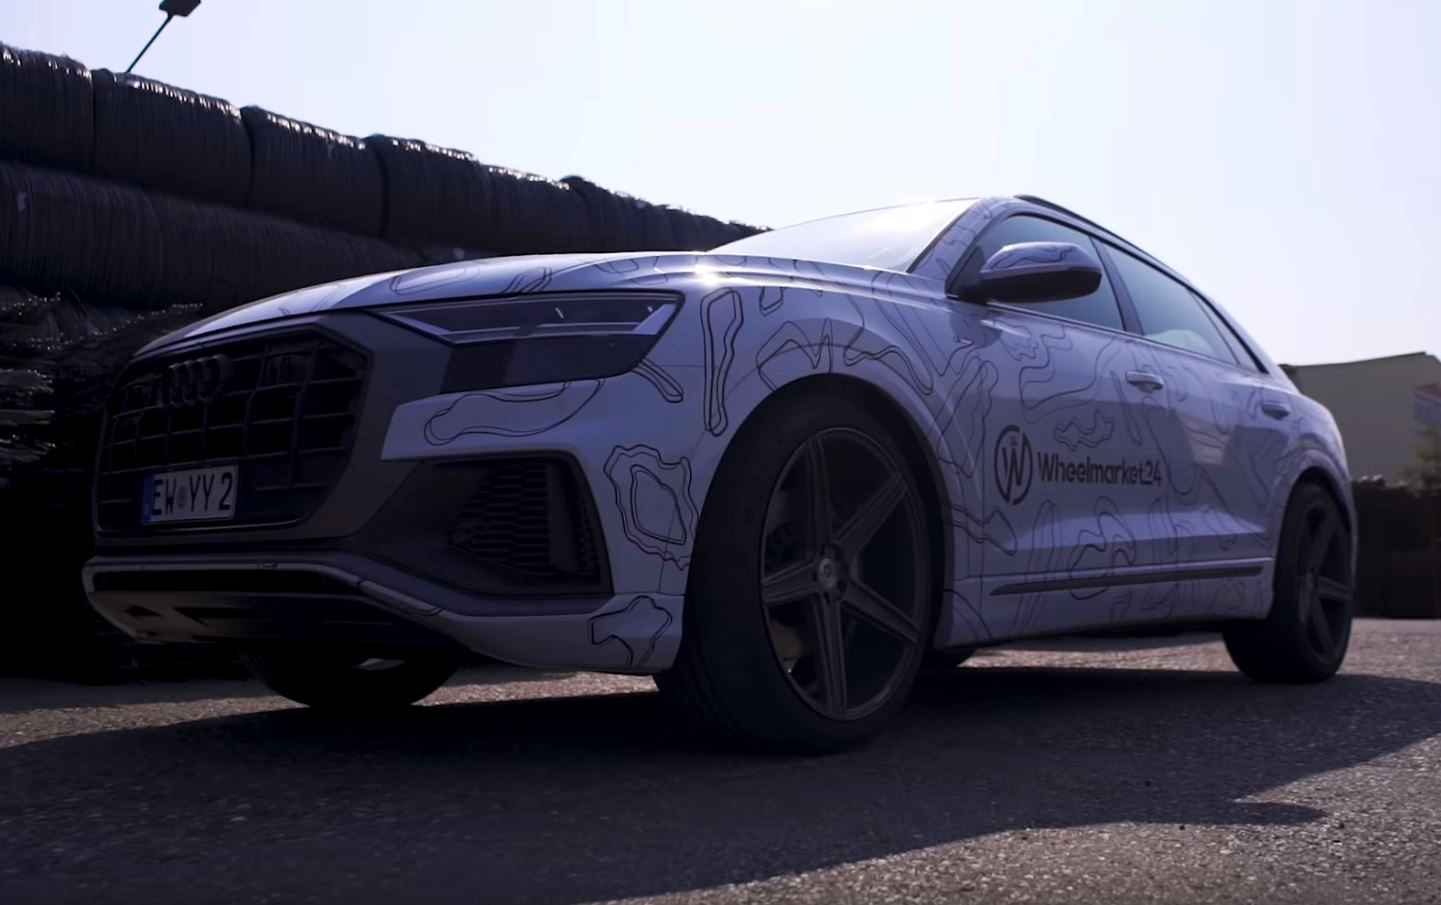 Vidéo: RaceChip Audi Q8 50 TDI avec 330 PS et 685 NM